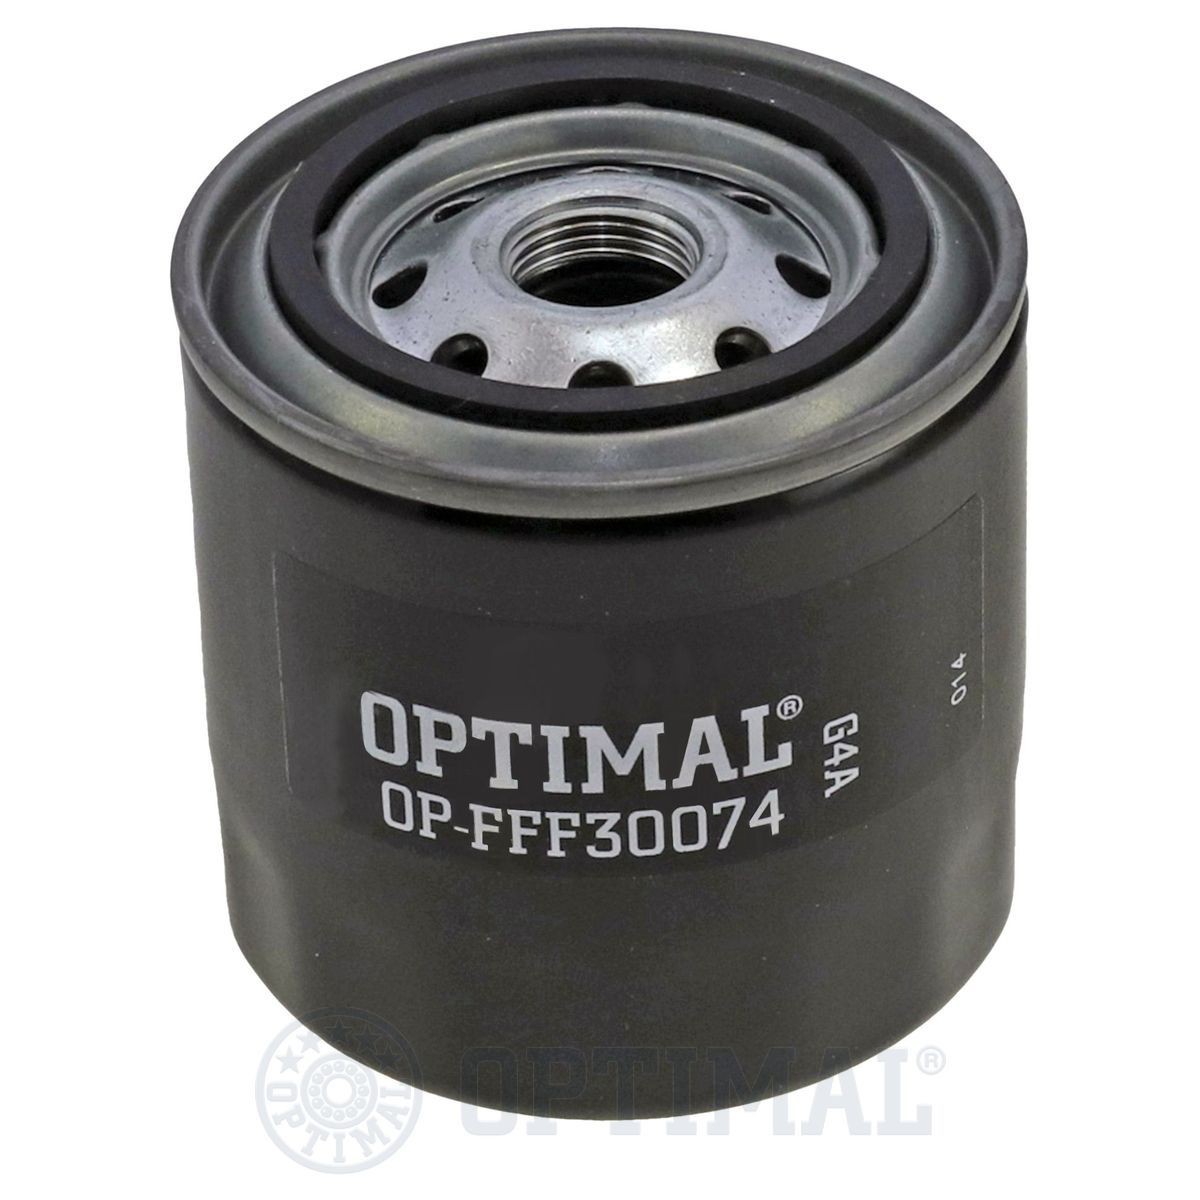 OPTIMAL OP-FFF30074 Fuel filter 5-87610-011-0